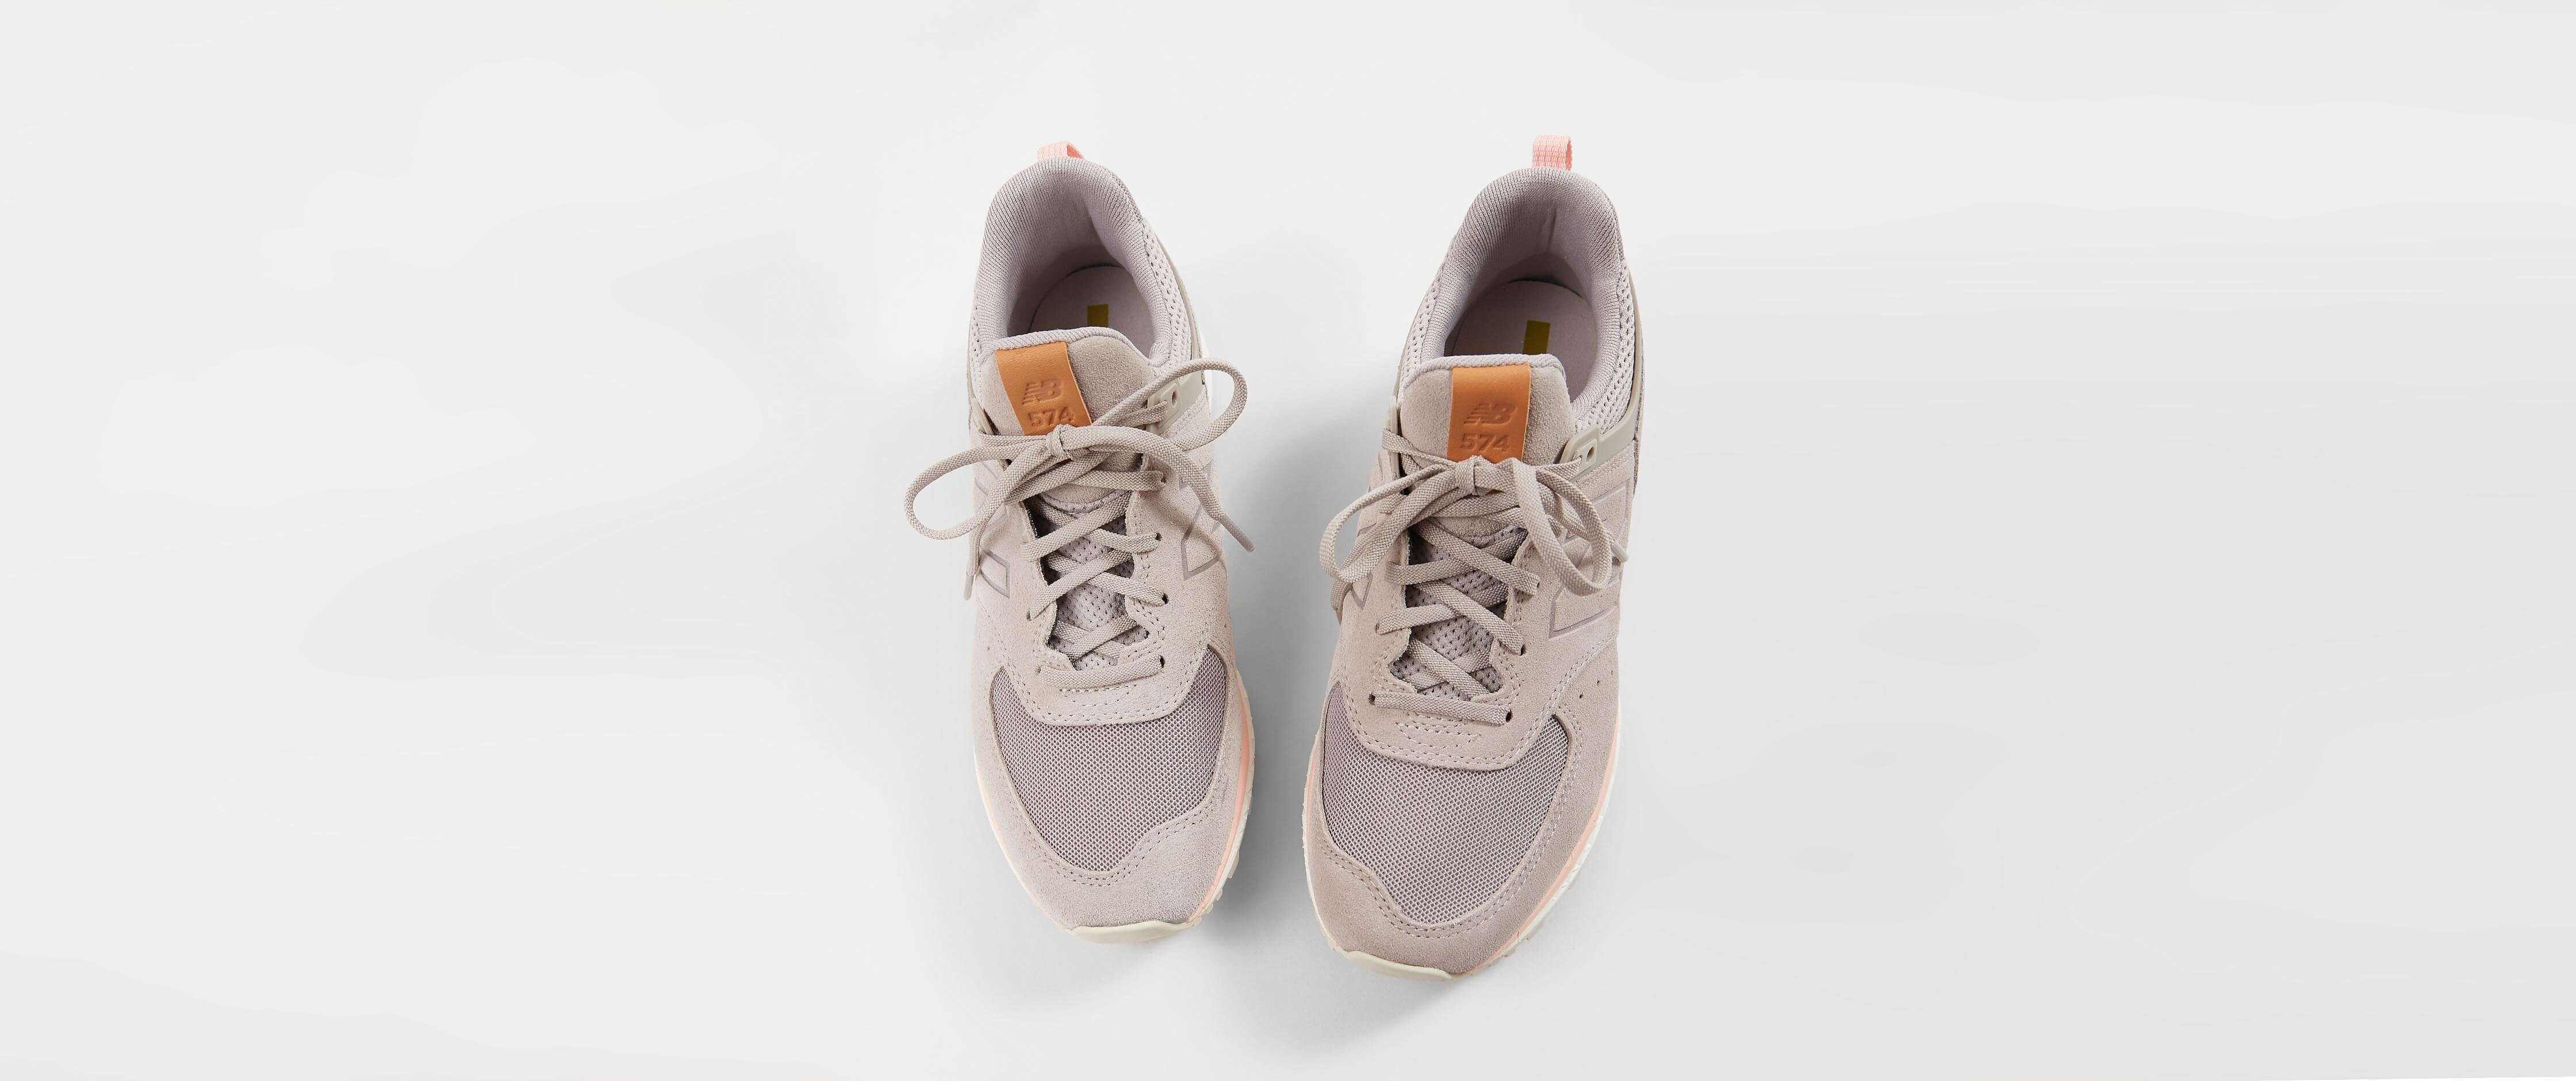 new balance lifestyle 574 sport flat white & himalayan pink shoes